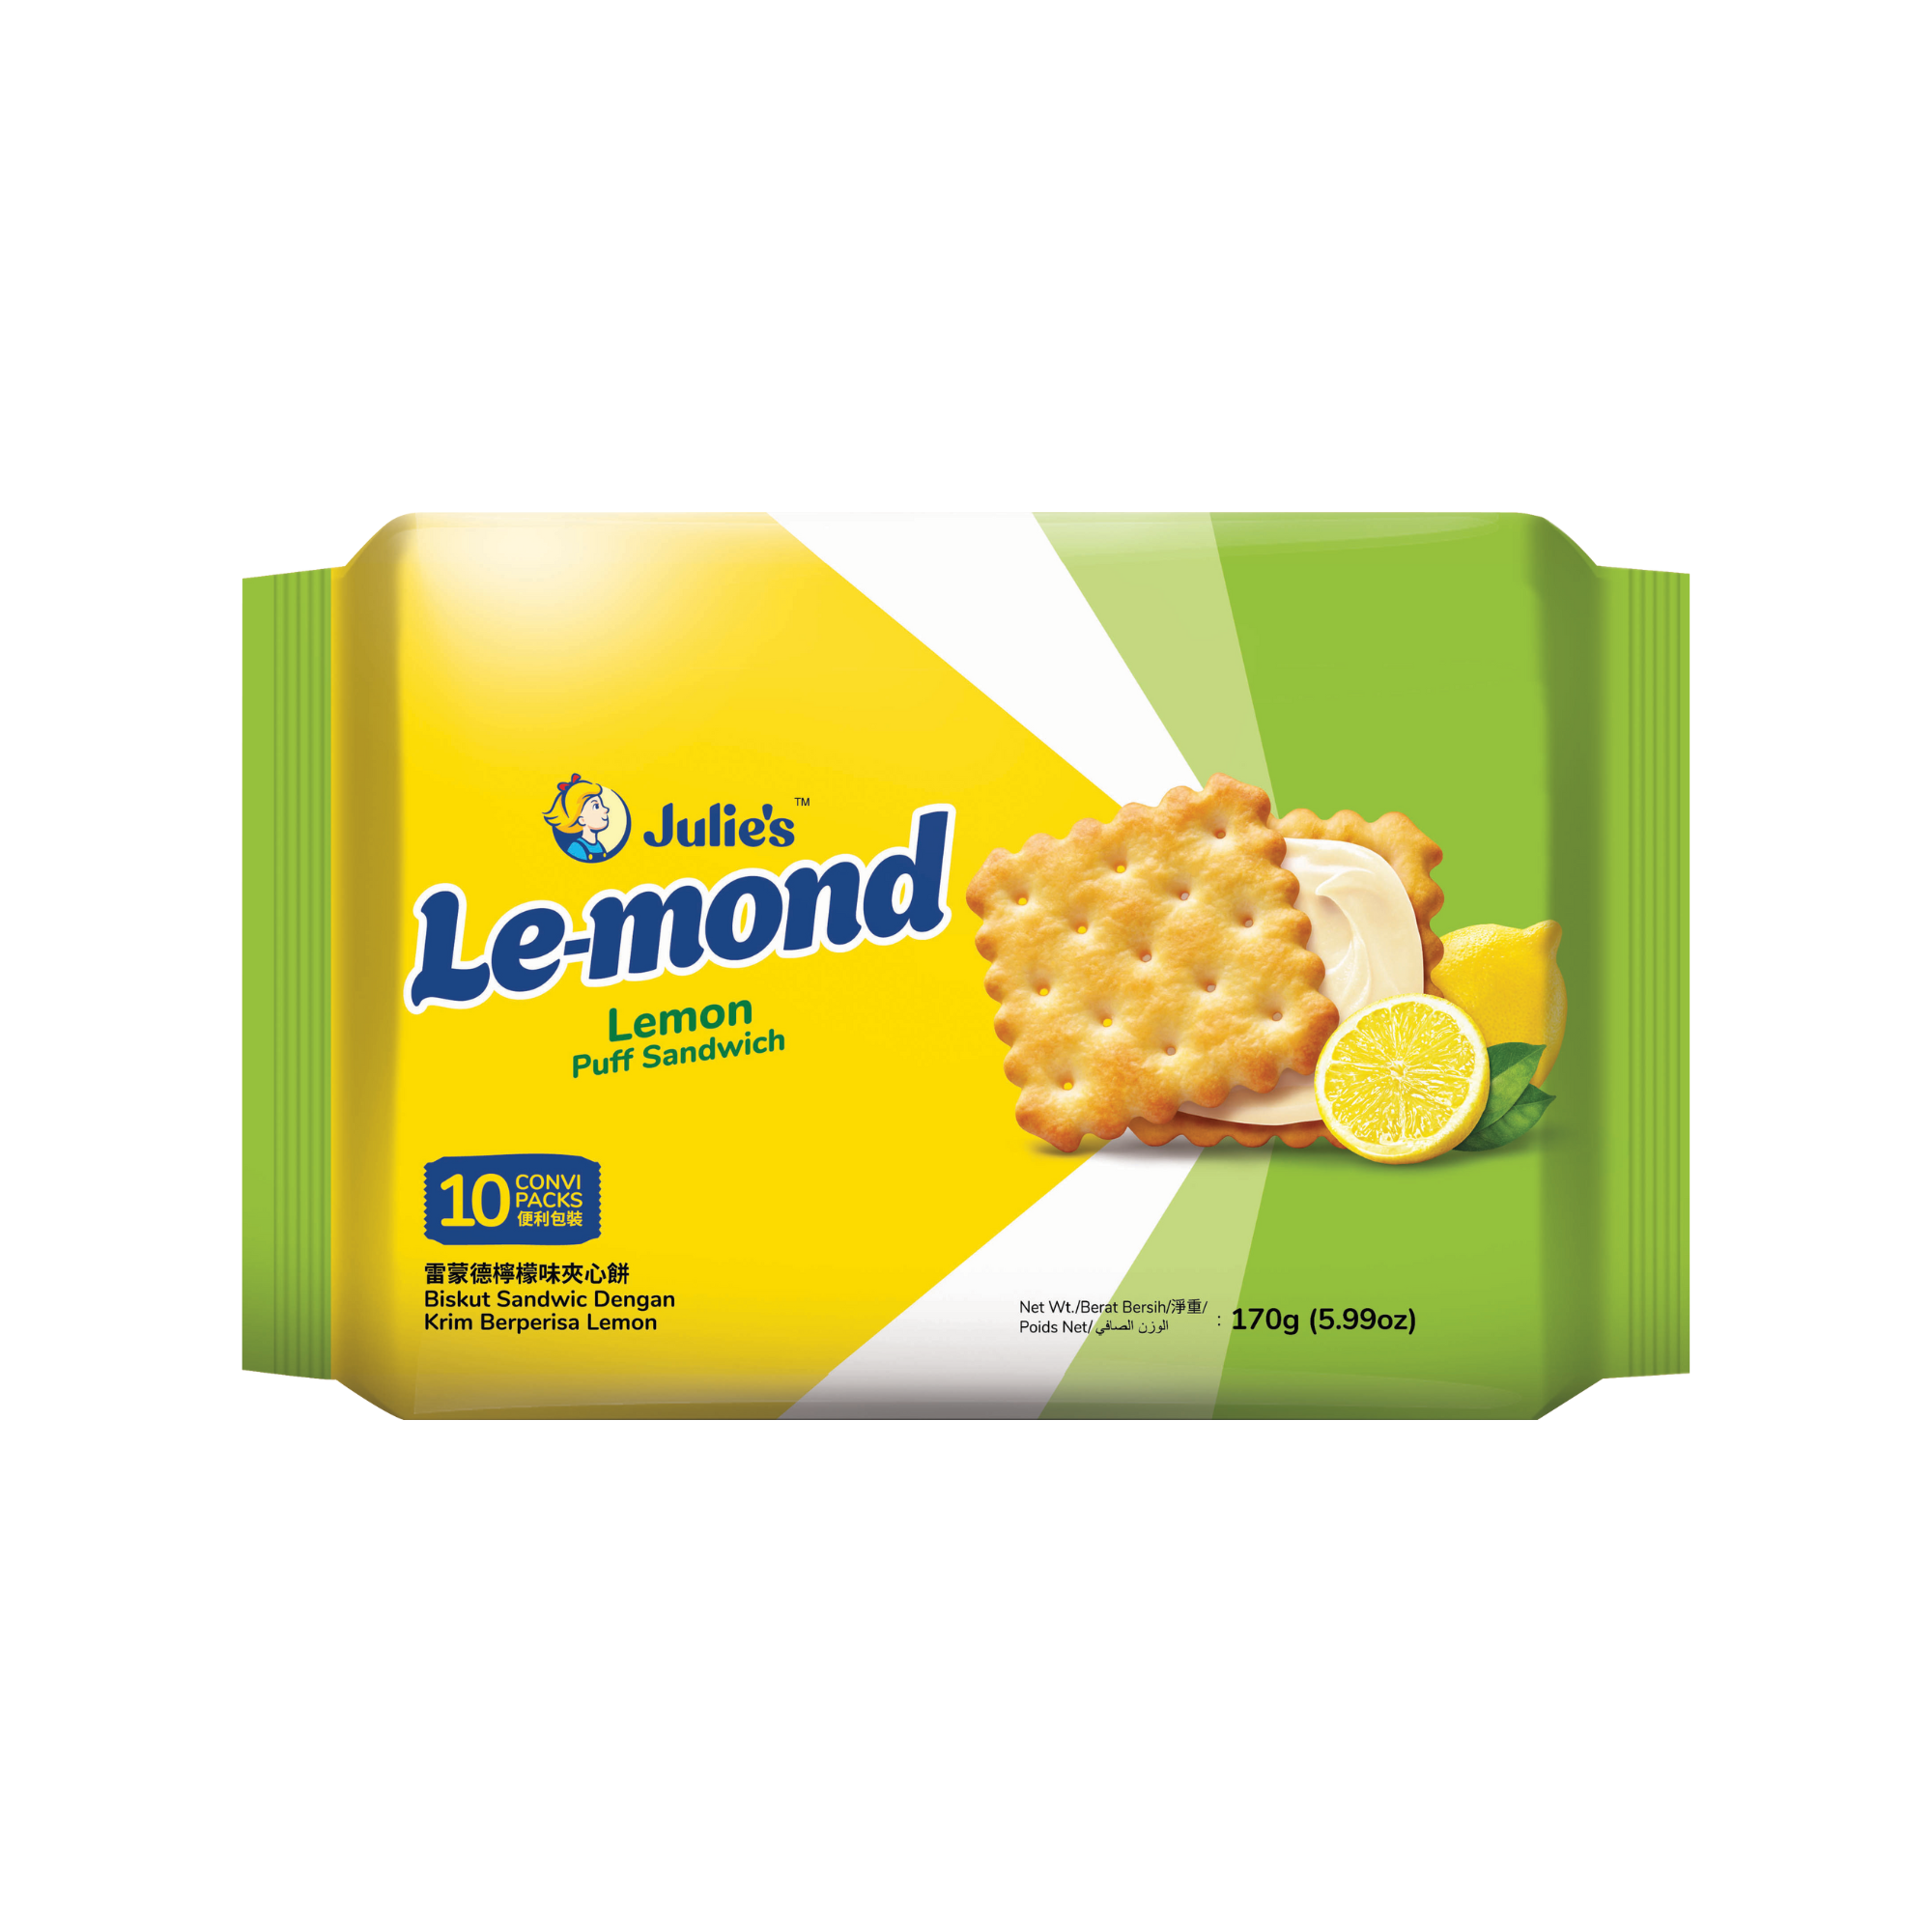 Julie's Le-mond Lemon Puff Sandwich 170g (Plastic Tray)